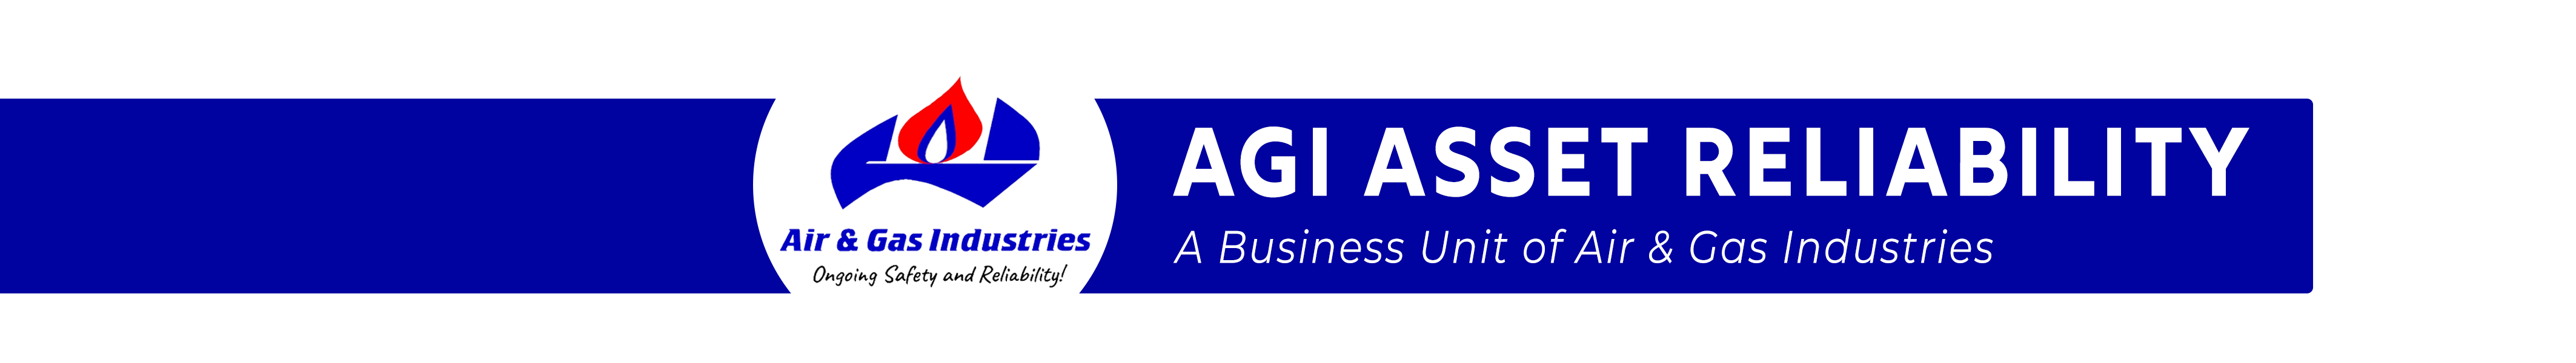 Air & Gas Industries Logo square